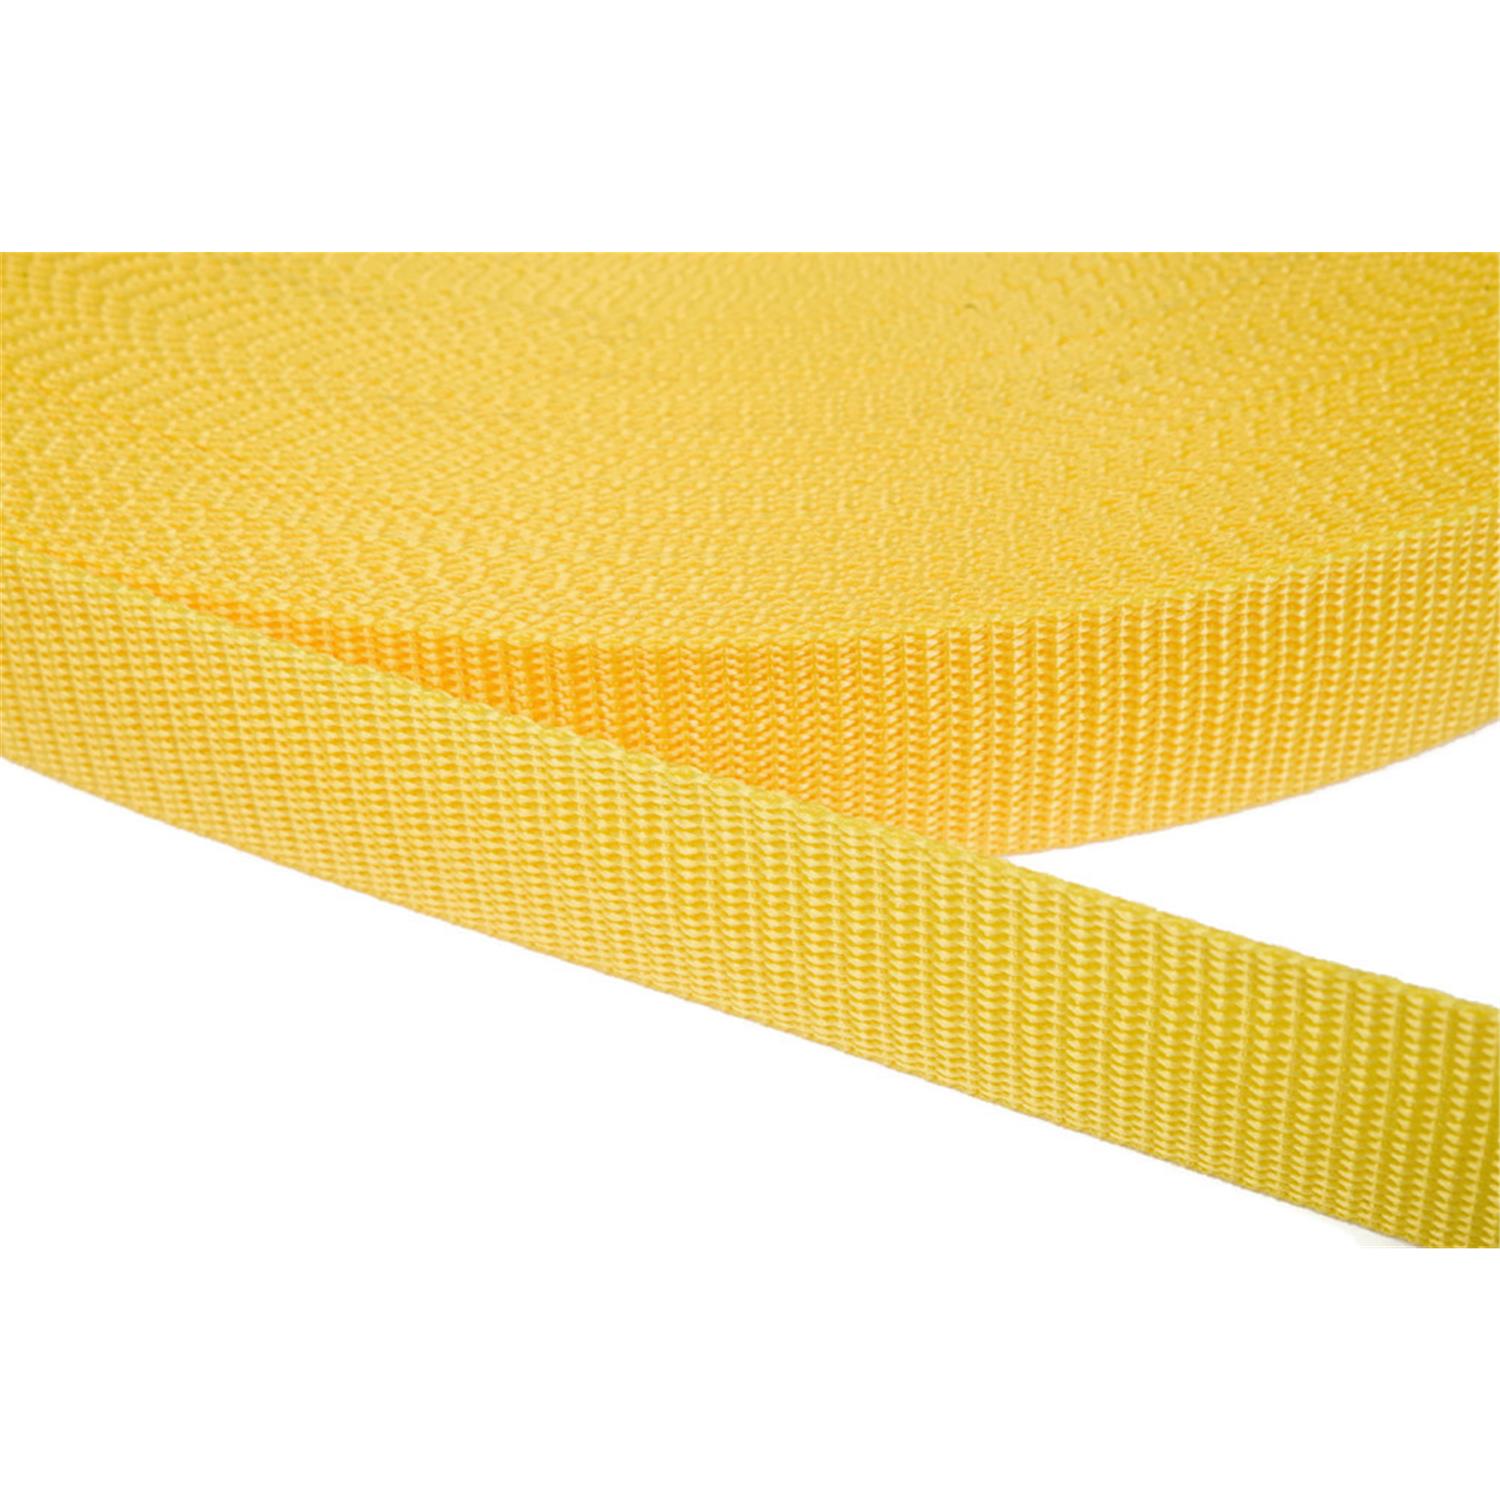 Gurtband 50mm breit aus Polypropylen in 41 Farben 10 - gelb 6 Meter